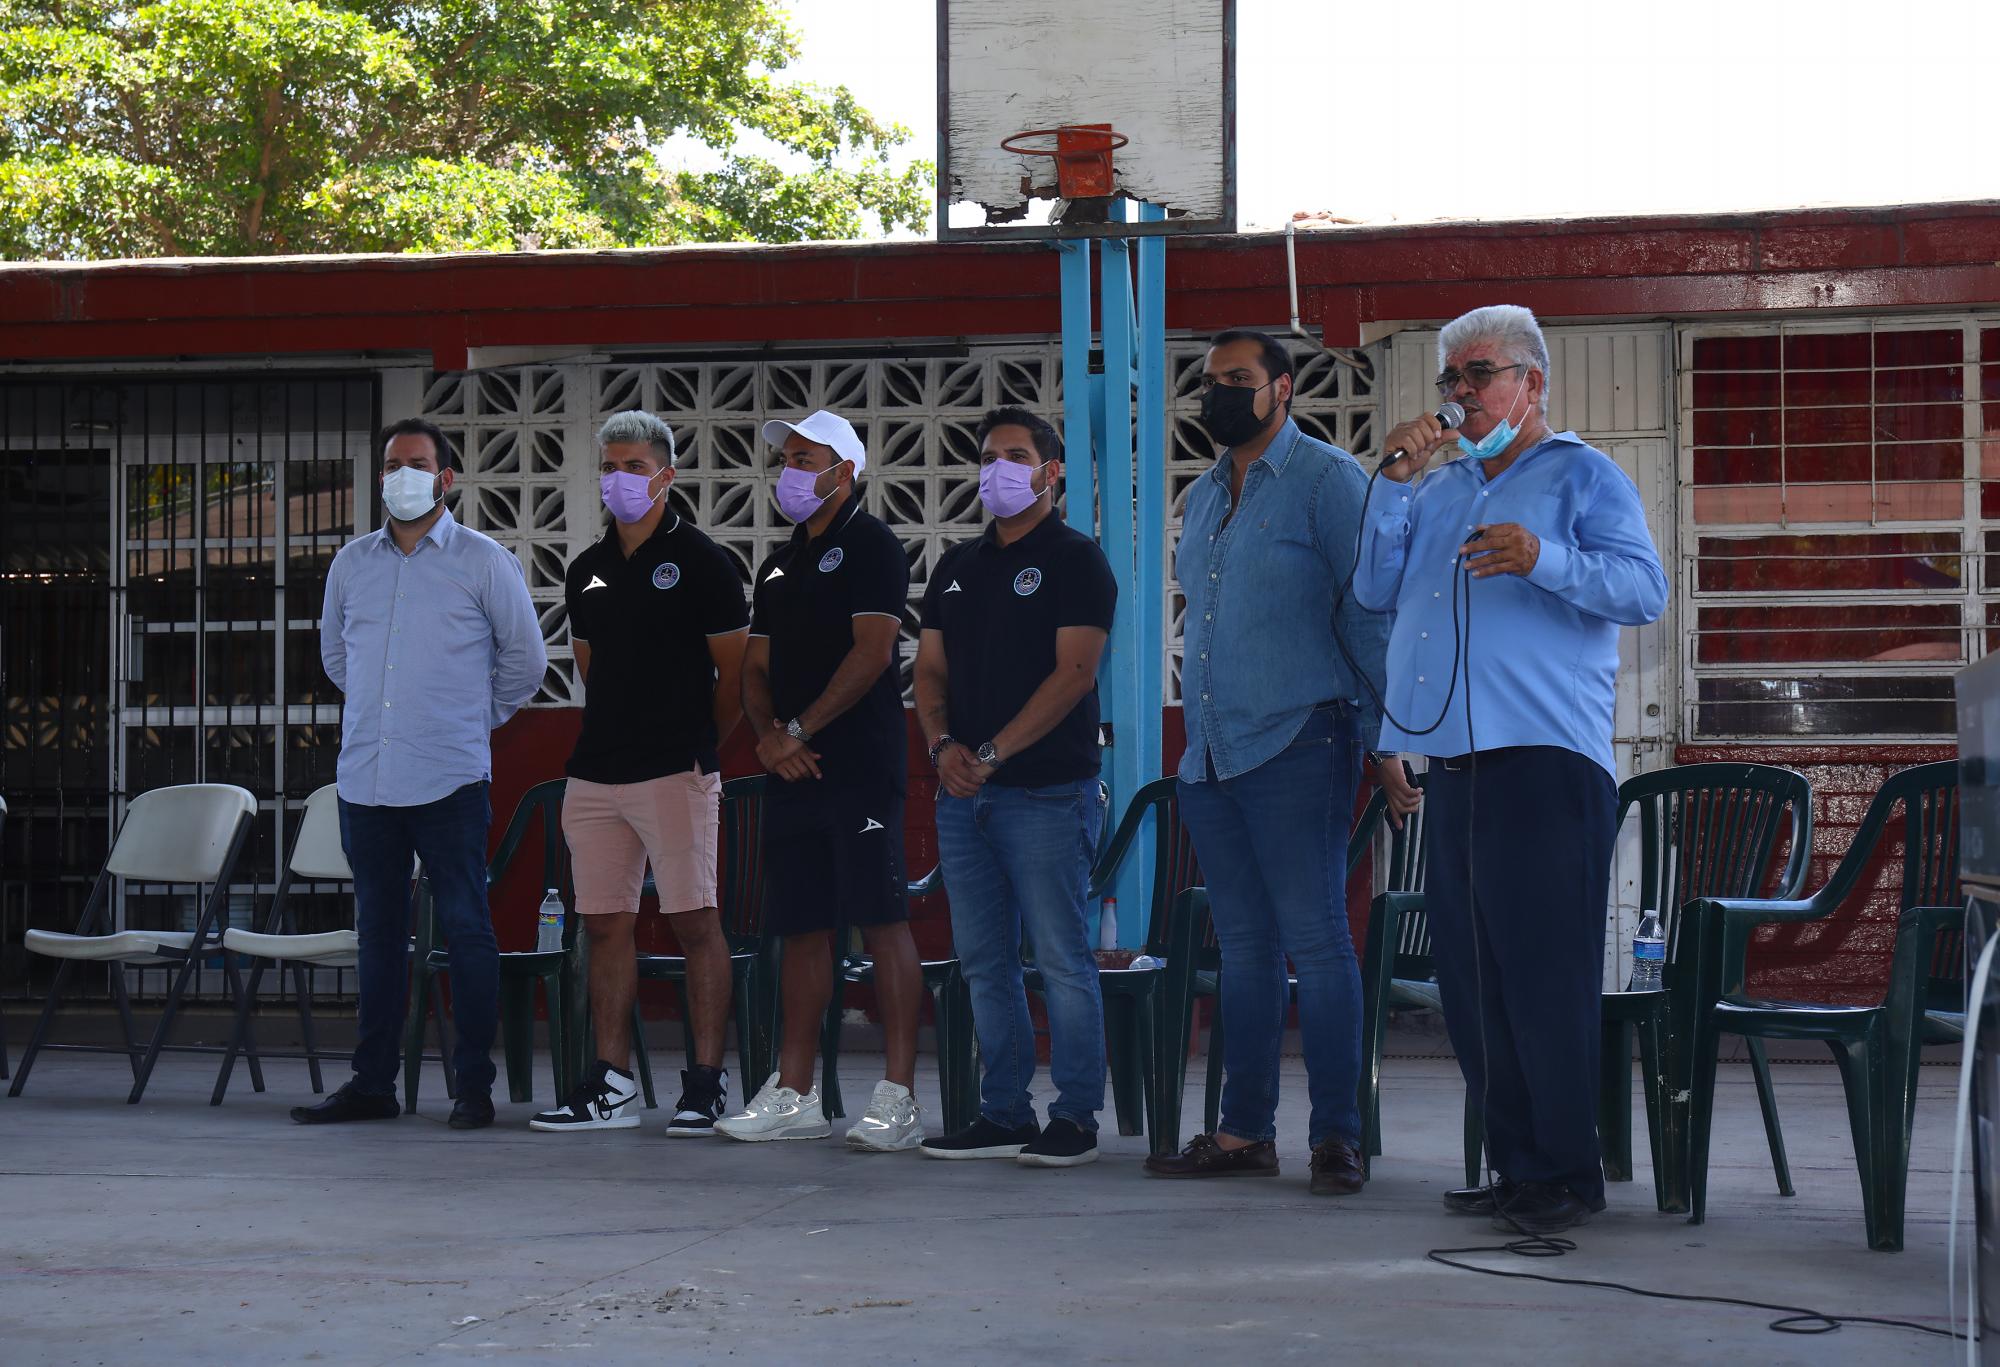 $!Marco Fabián y Bryan Colula visitan Primaria de Urías durante donación de minisplits